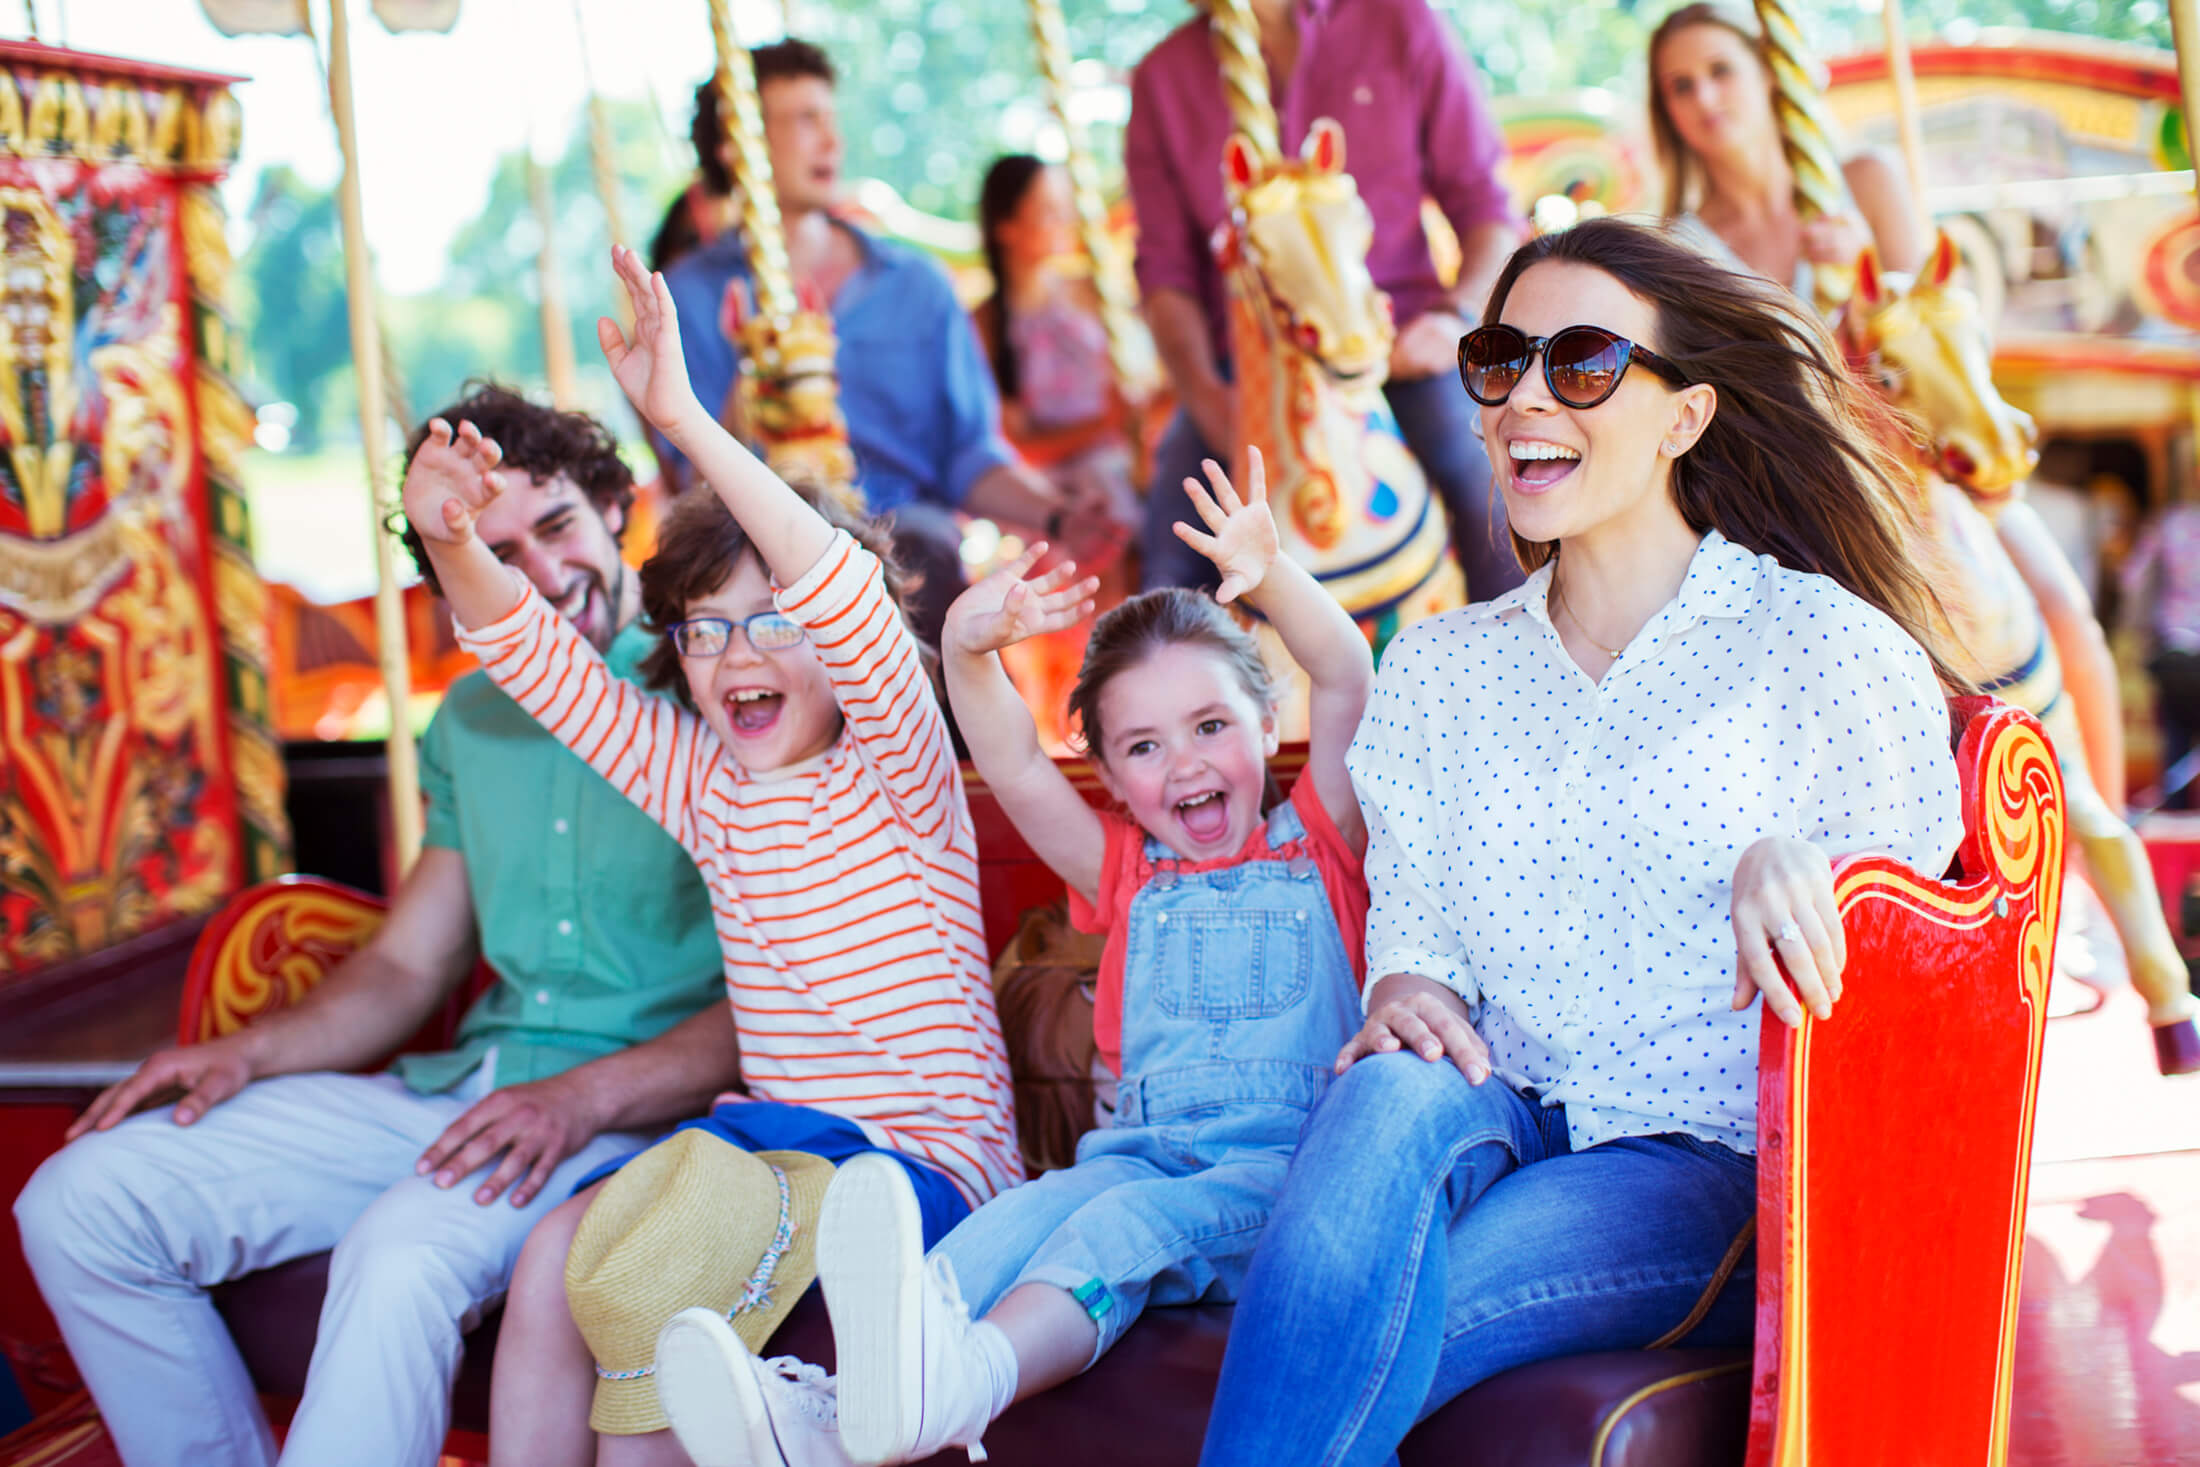 a family ridding an amusement park ride